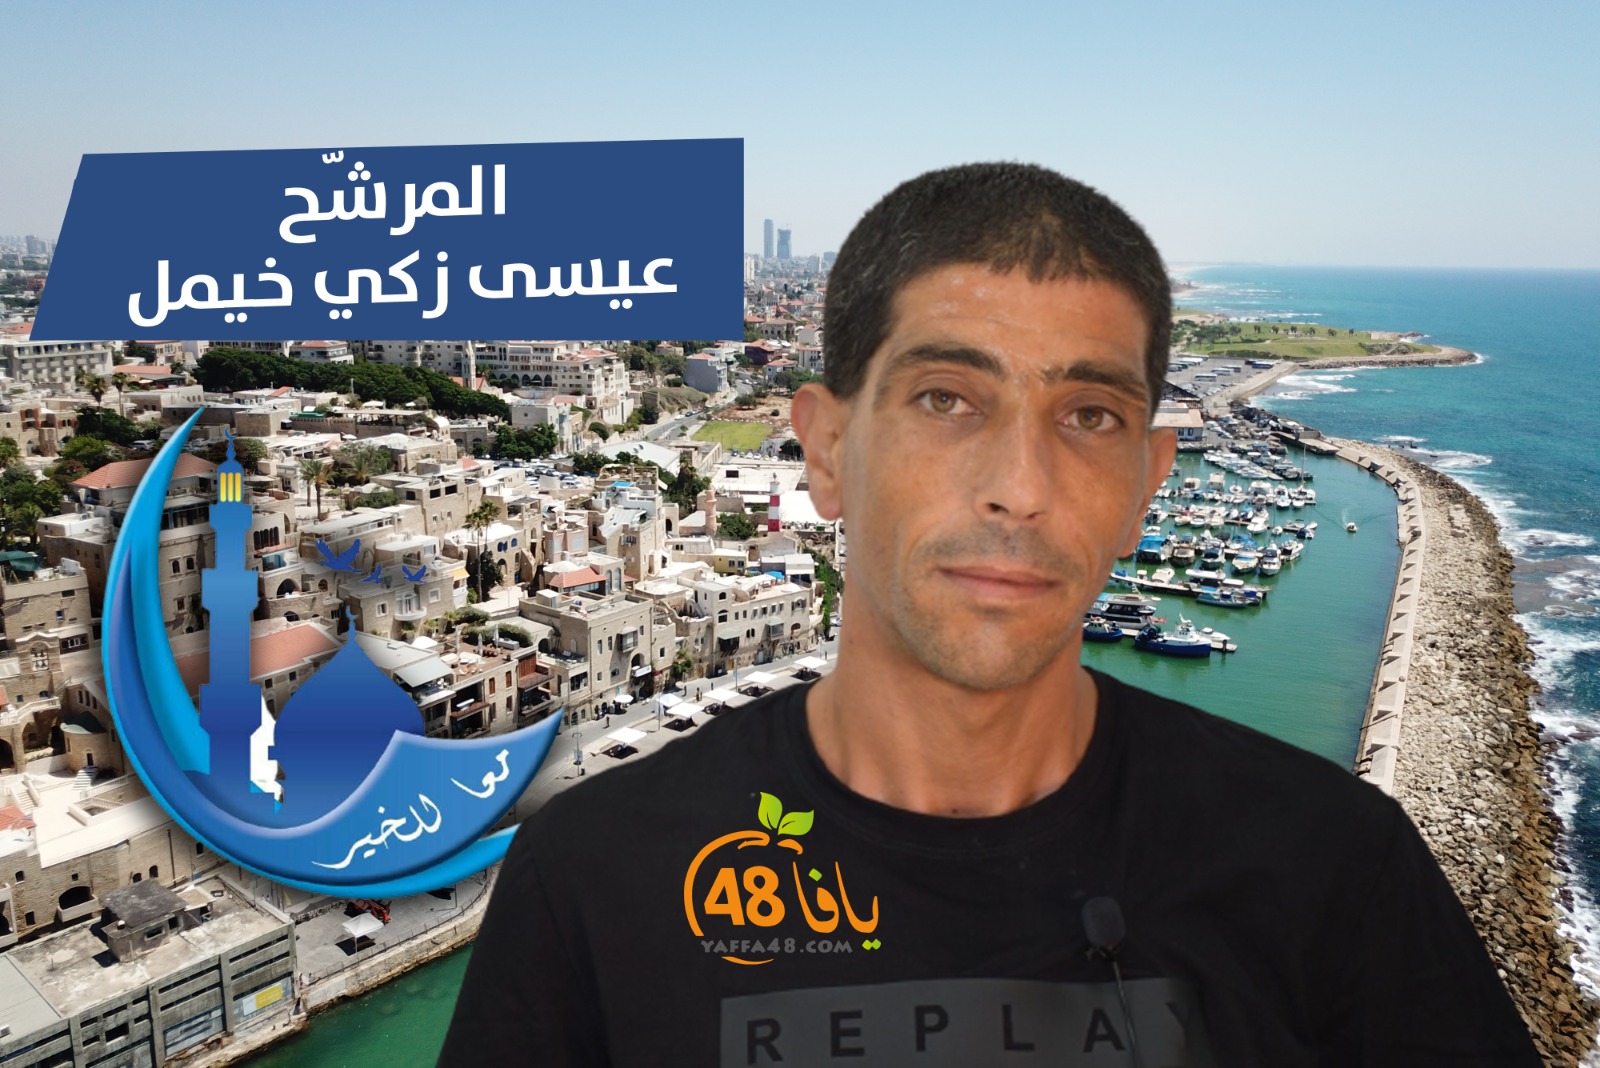  فيديو: تعرّف على المرشّح لانتخابات الهيئة السيد عيسى خيمل 